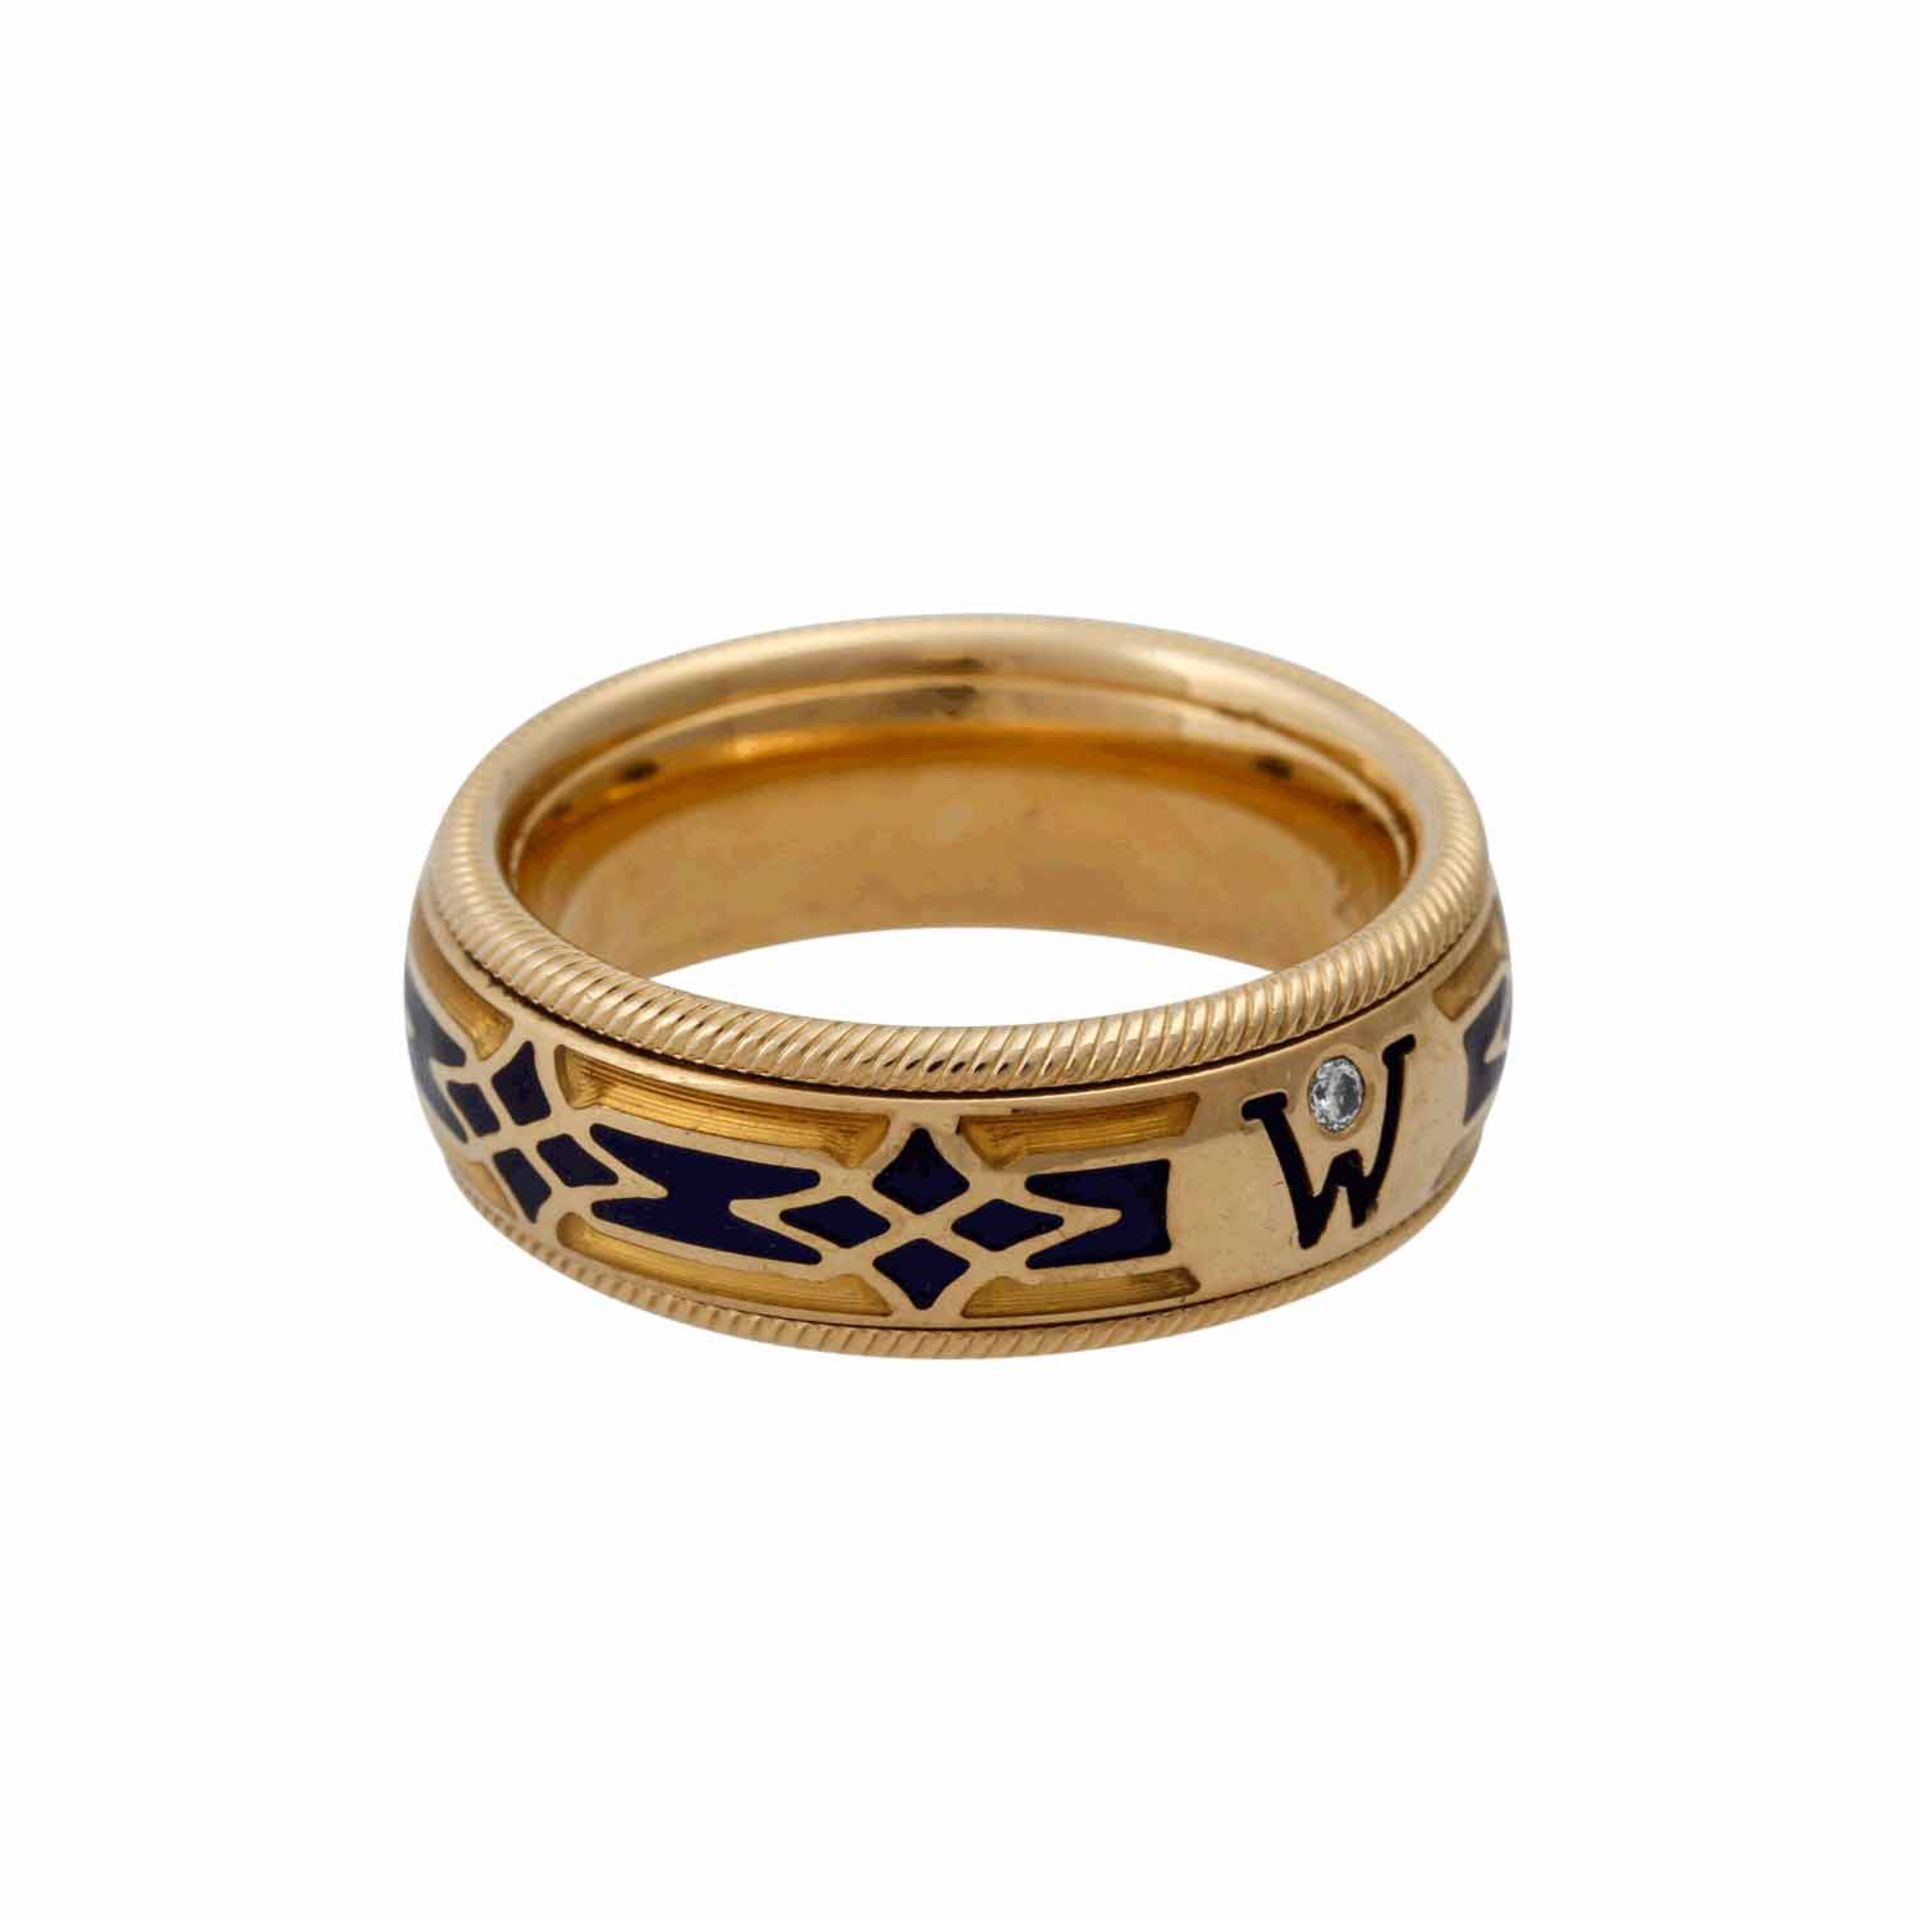 WELLENDORFF Ring "Baronesse" mit Brillantvon 0,02 ct und blauem/gelbem Email, drehbar,